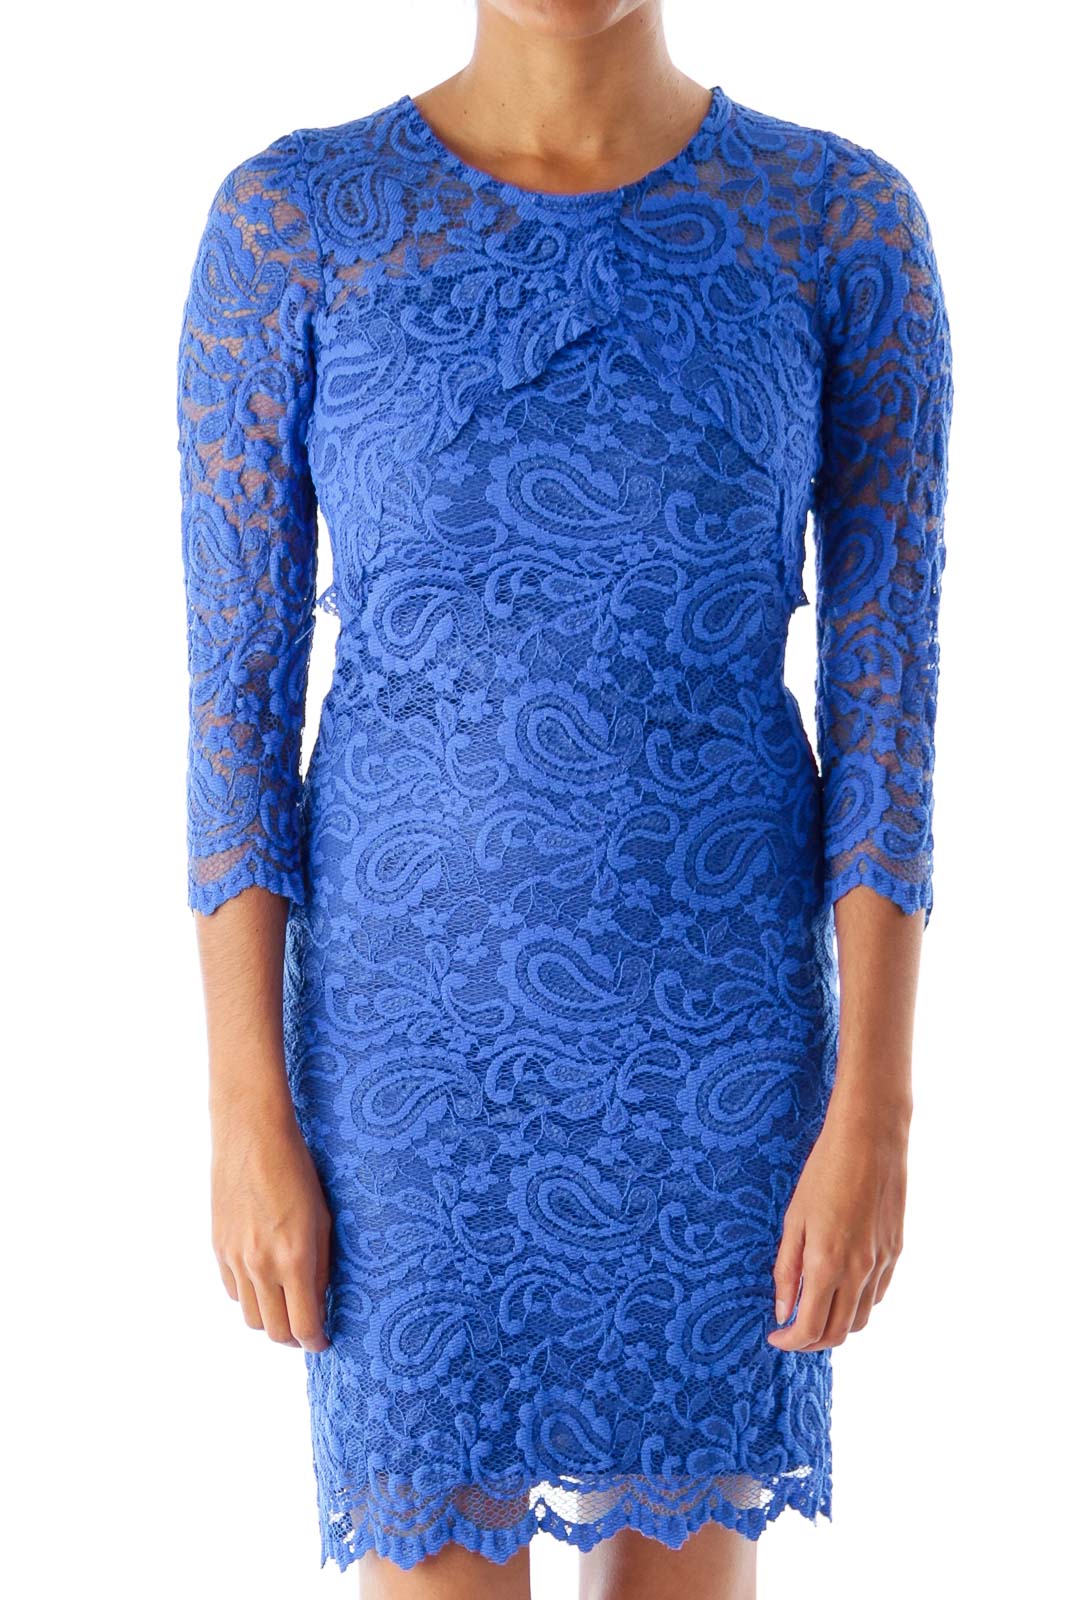 Blue Cutout Lace Dress Front